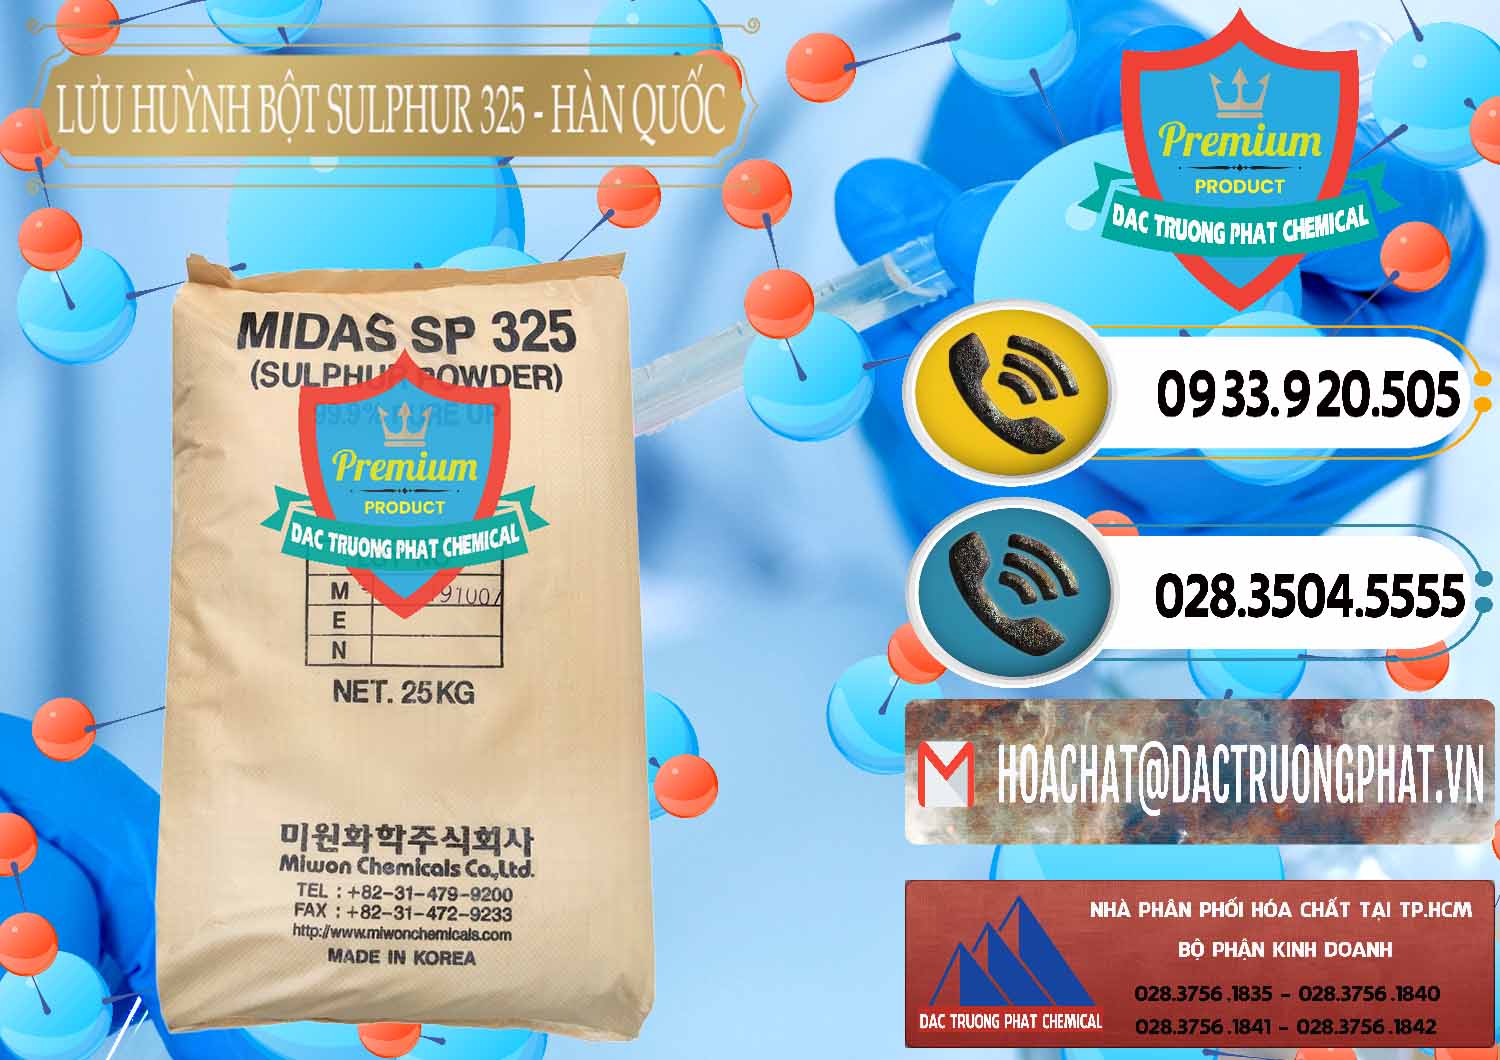 Nơi chuyên bán _ cung ứng Lưu huỳnh Bột - Sulfur Powder Midas SP 325 Hàn Quốc Korea - 0198 - Công ty nhập khẩu ( phân phối ) hóa chất tại TP.HCM - hoachatdetnhuom.vn